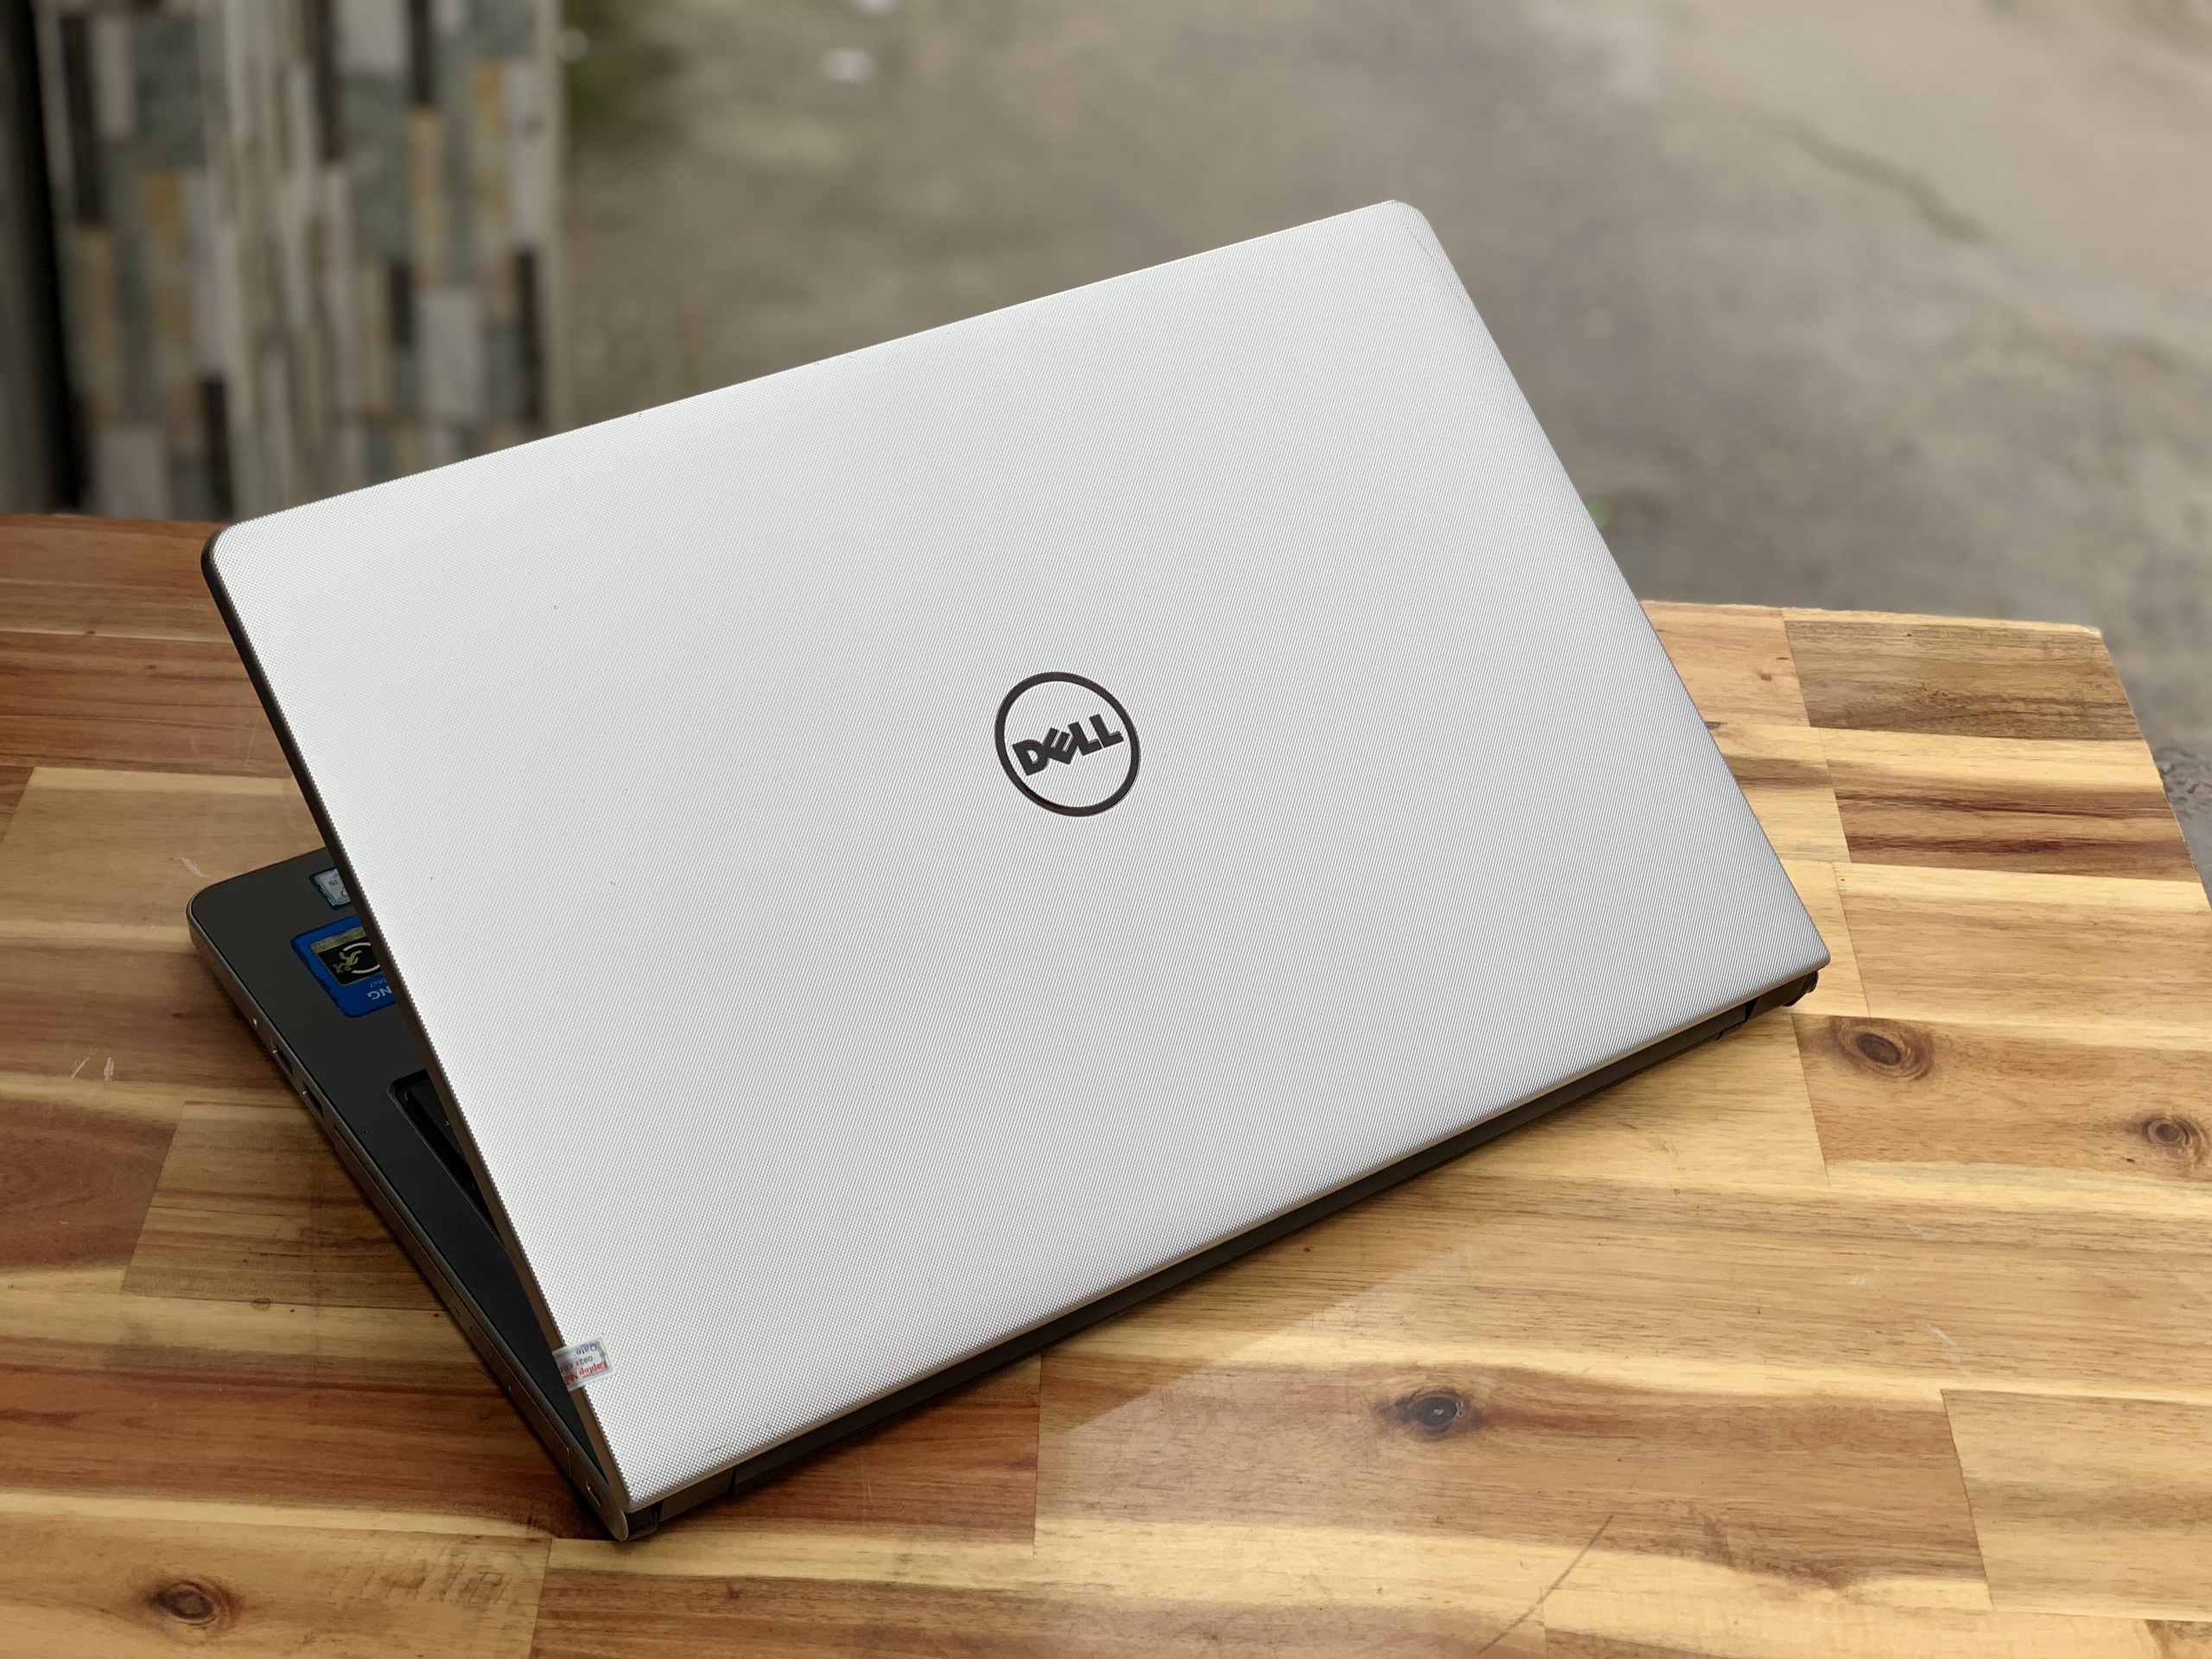 Laptop Dell Ultrabook 5559 , i5 6200U 8G SSD128G màu bạc đẹp zin 100% Giá rẻ1